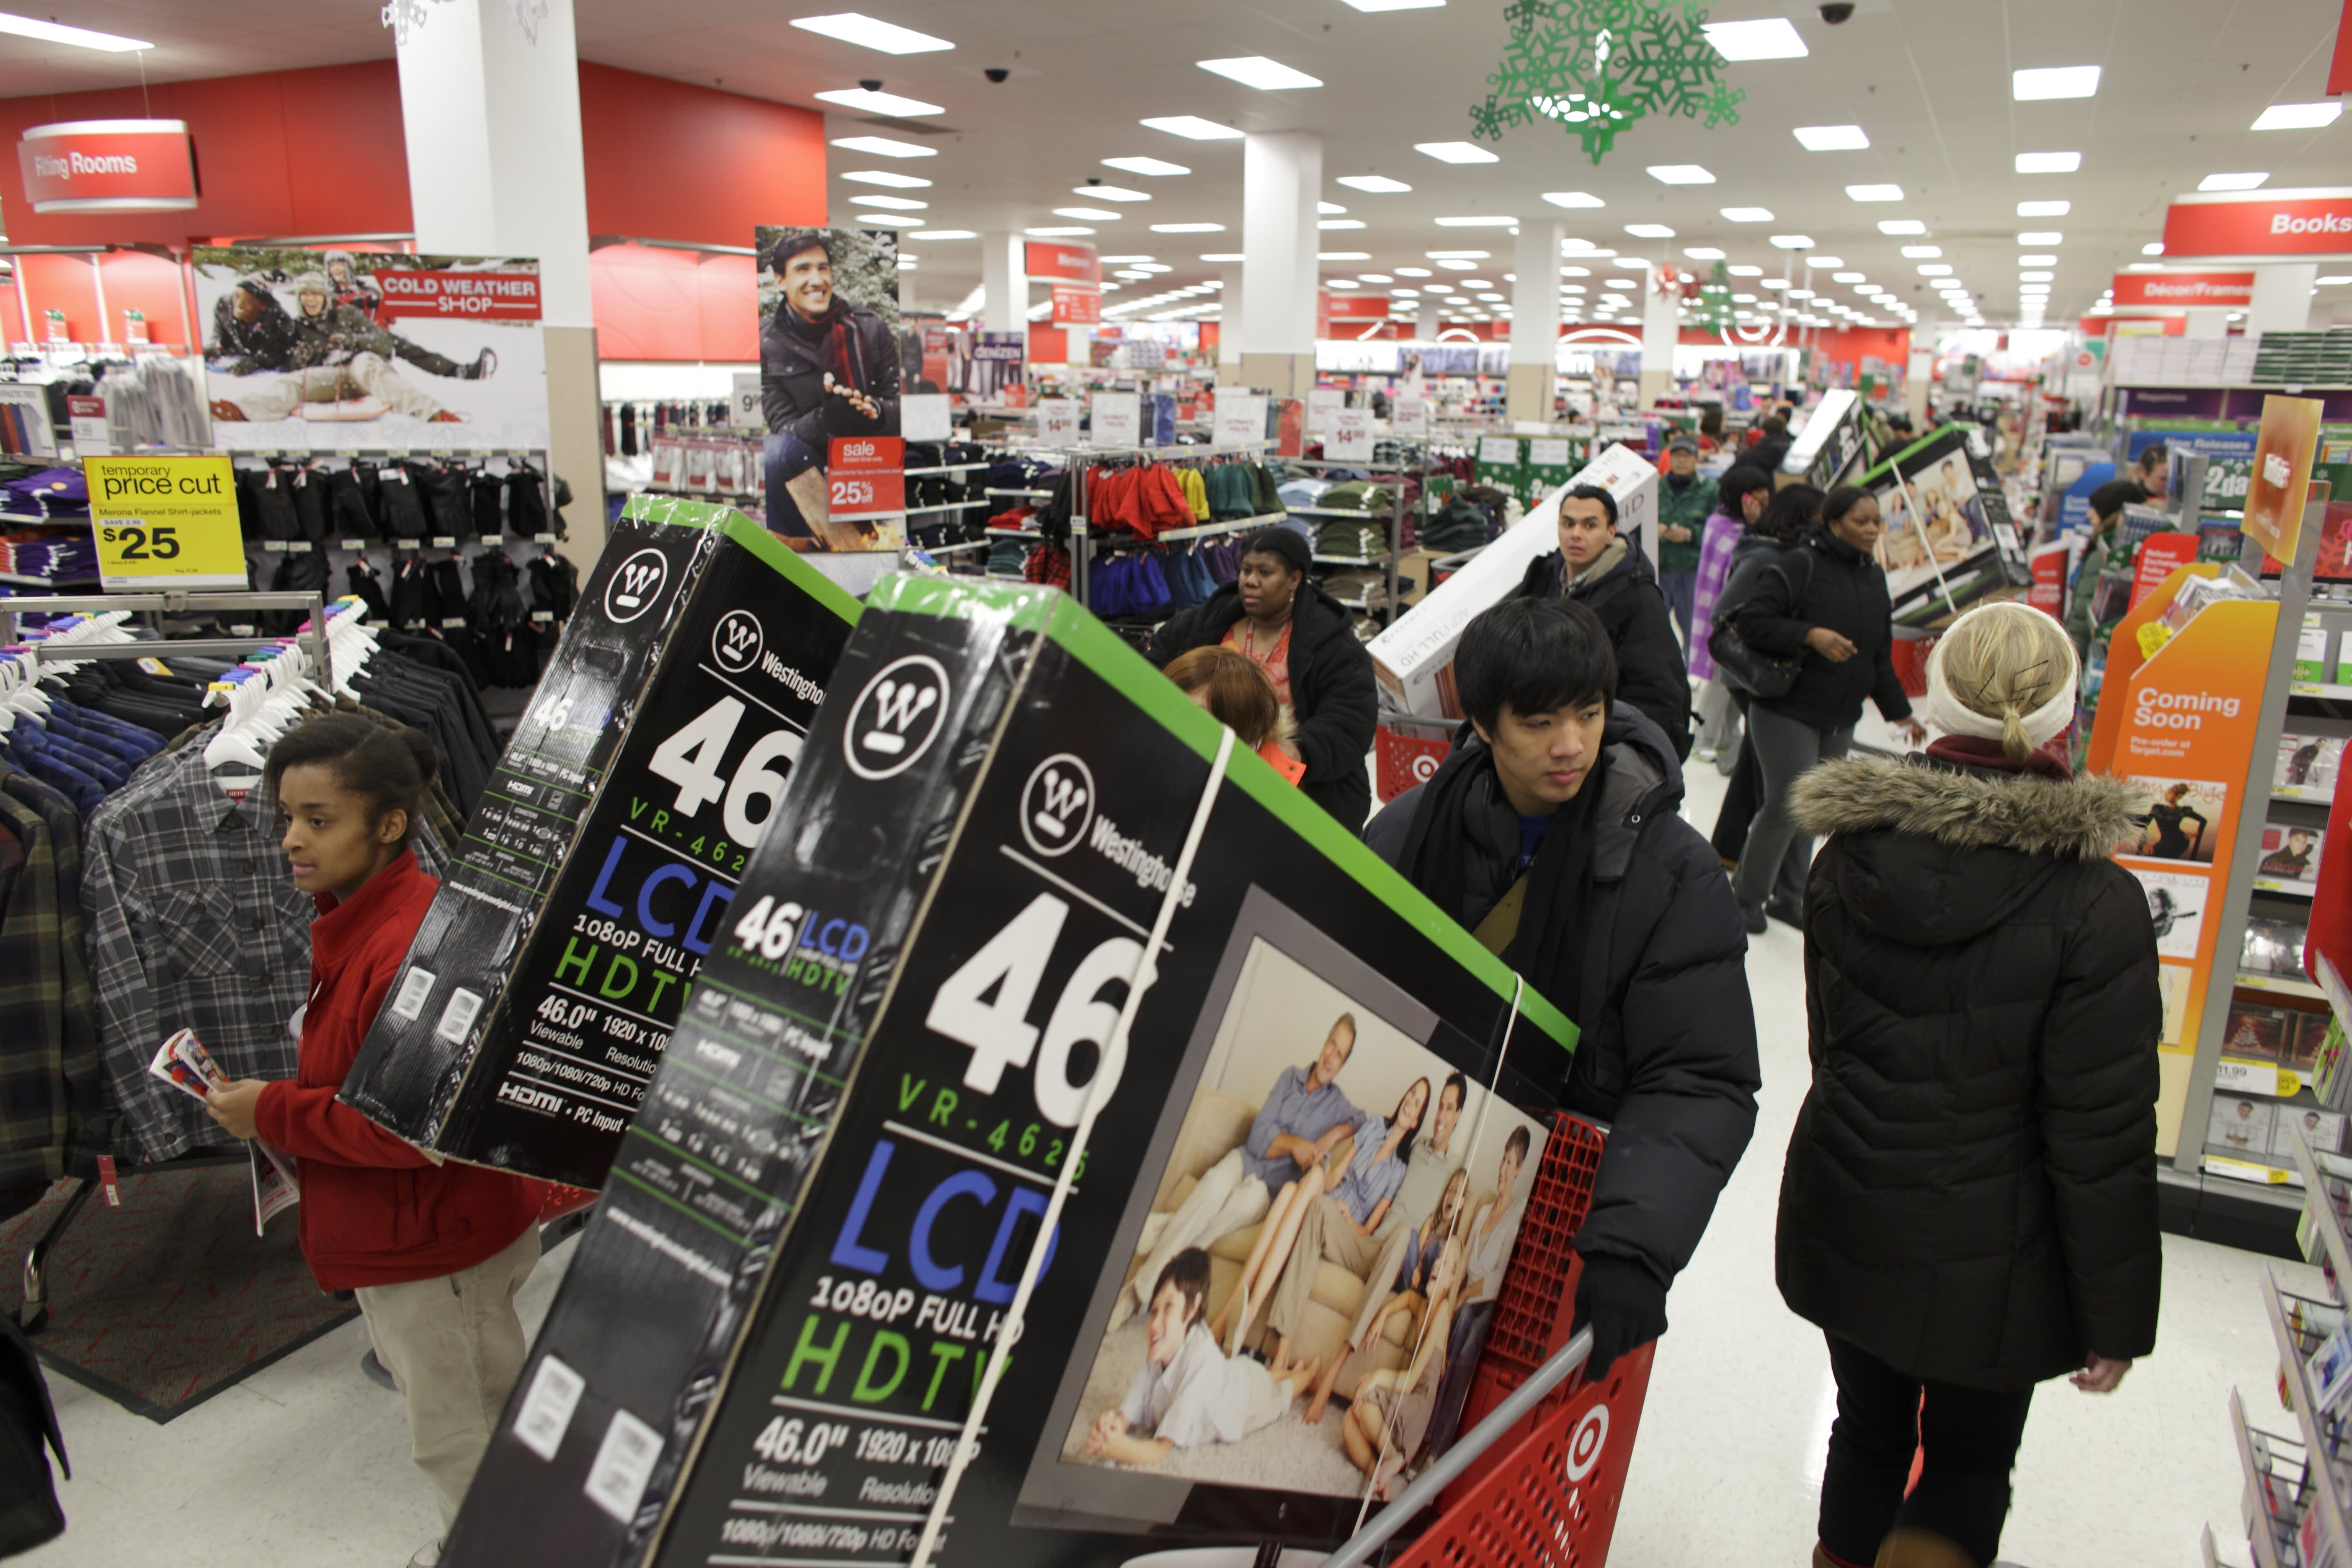 Black Friday Hours: When Do Stores Open In Massachusetts? - CBS Boston